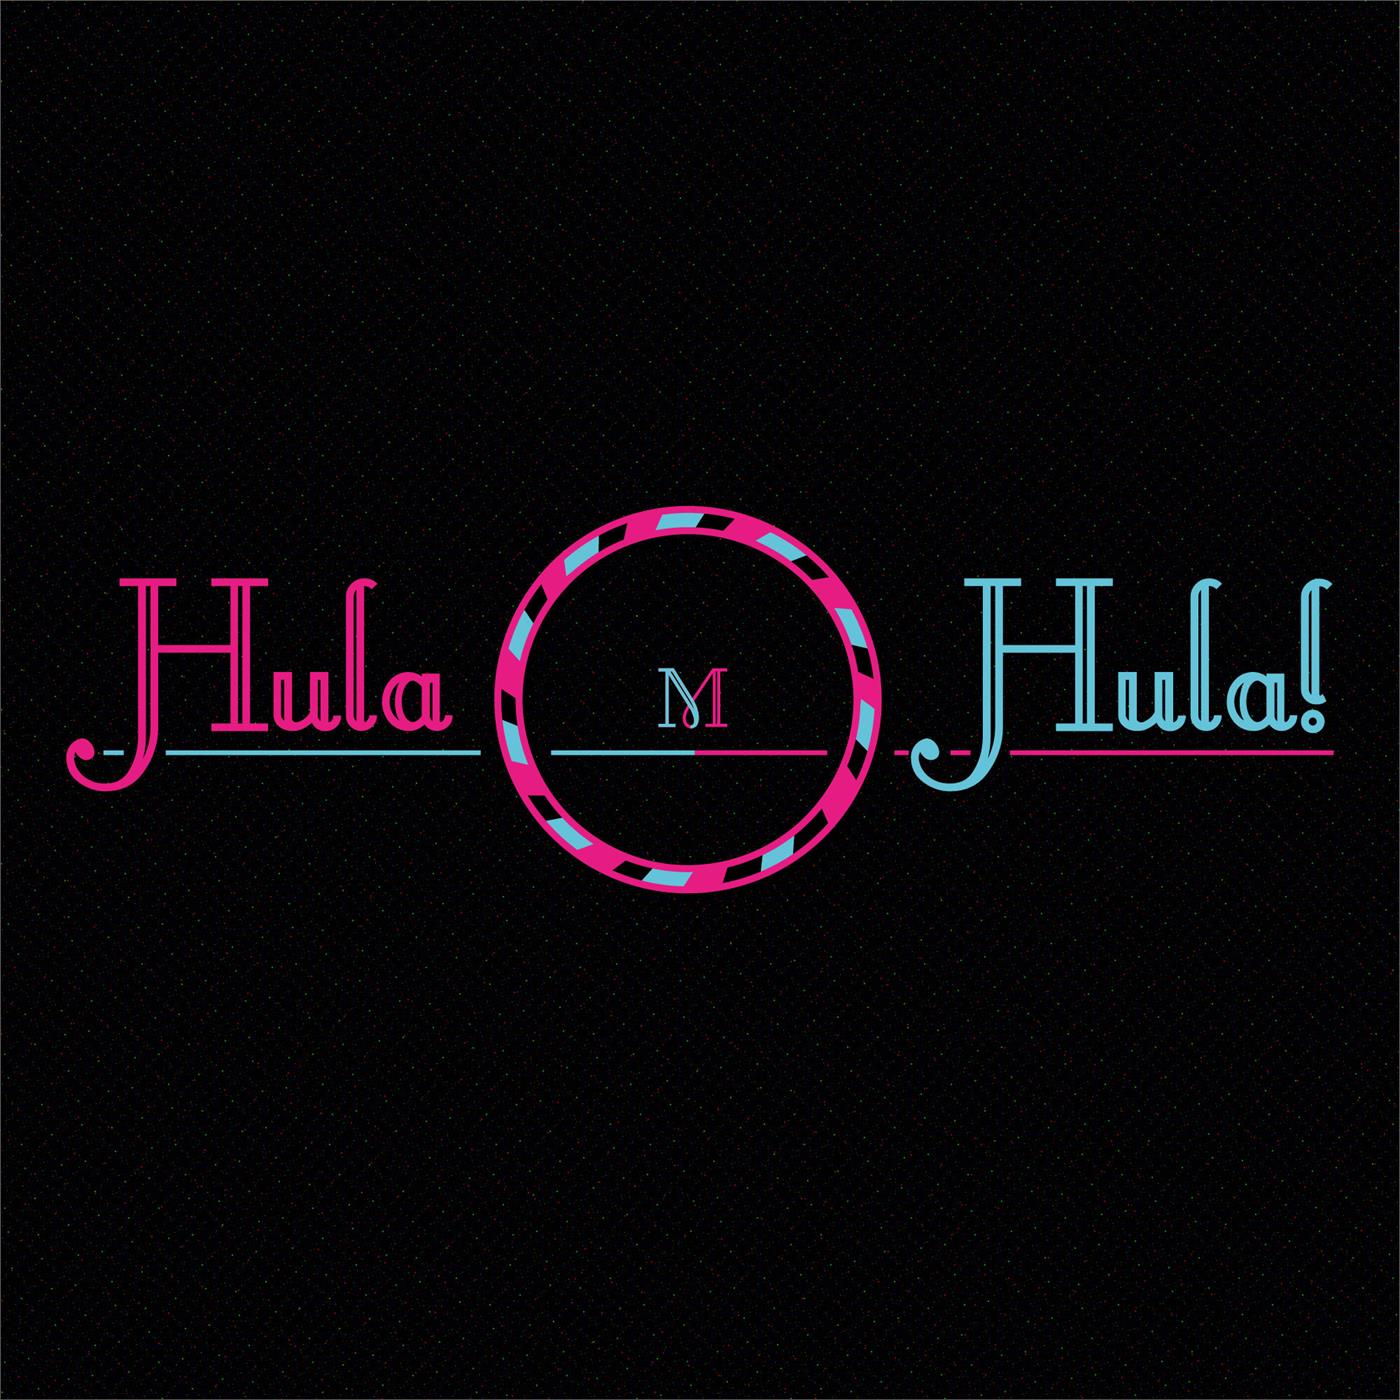 Hula Hula!